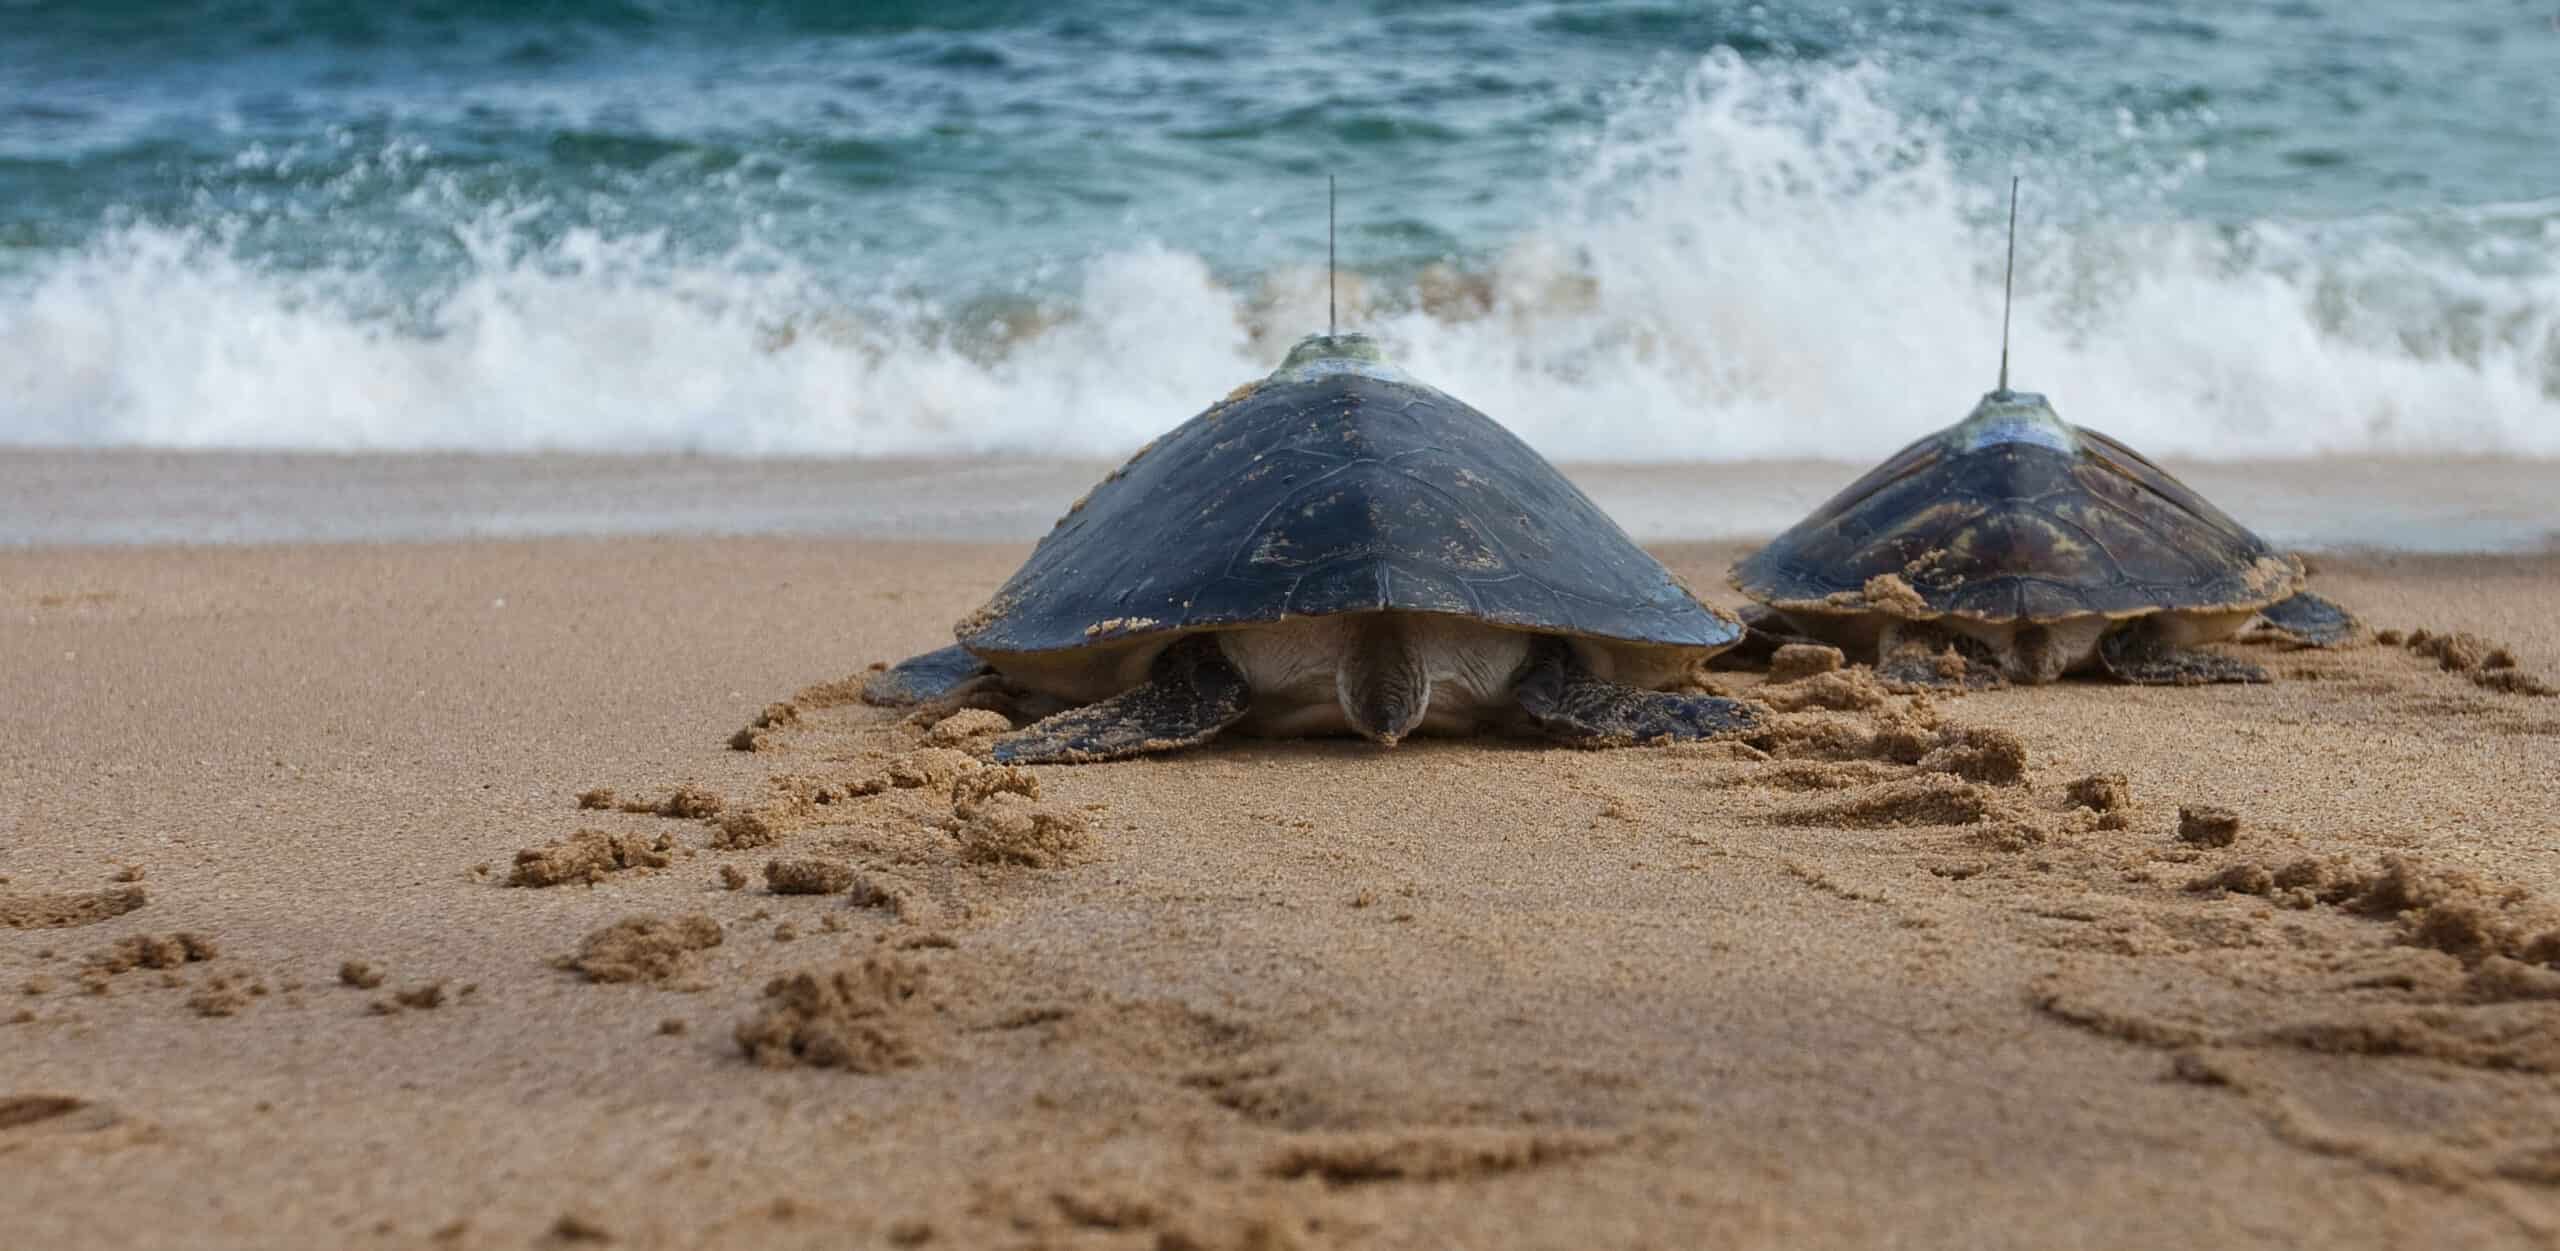 sea turtles with satellite tags